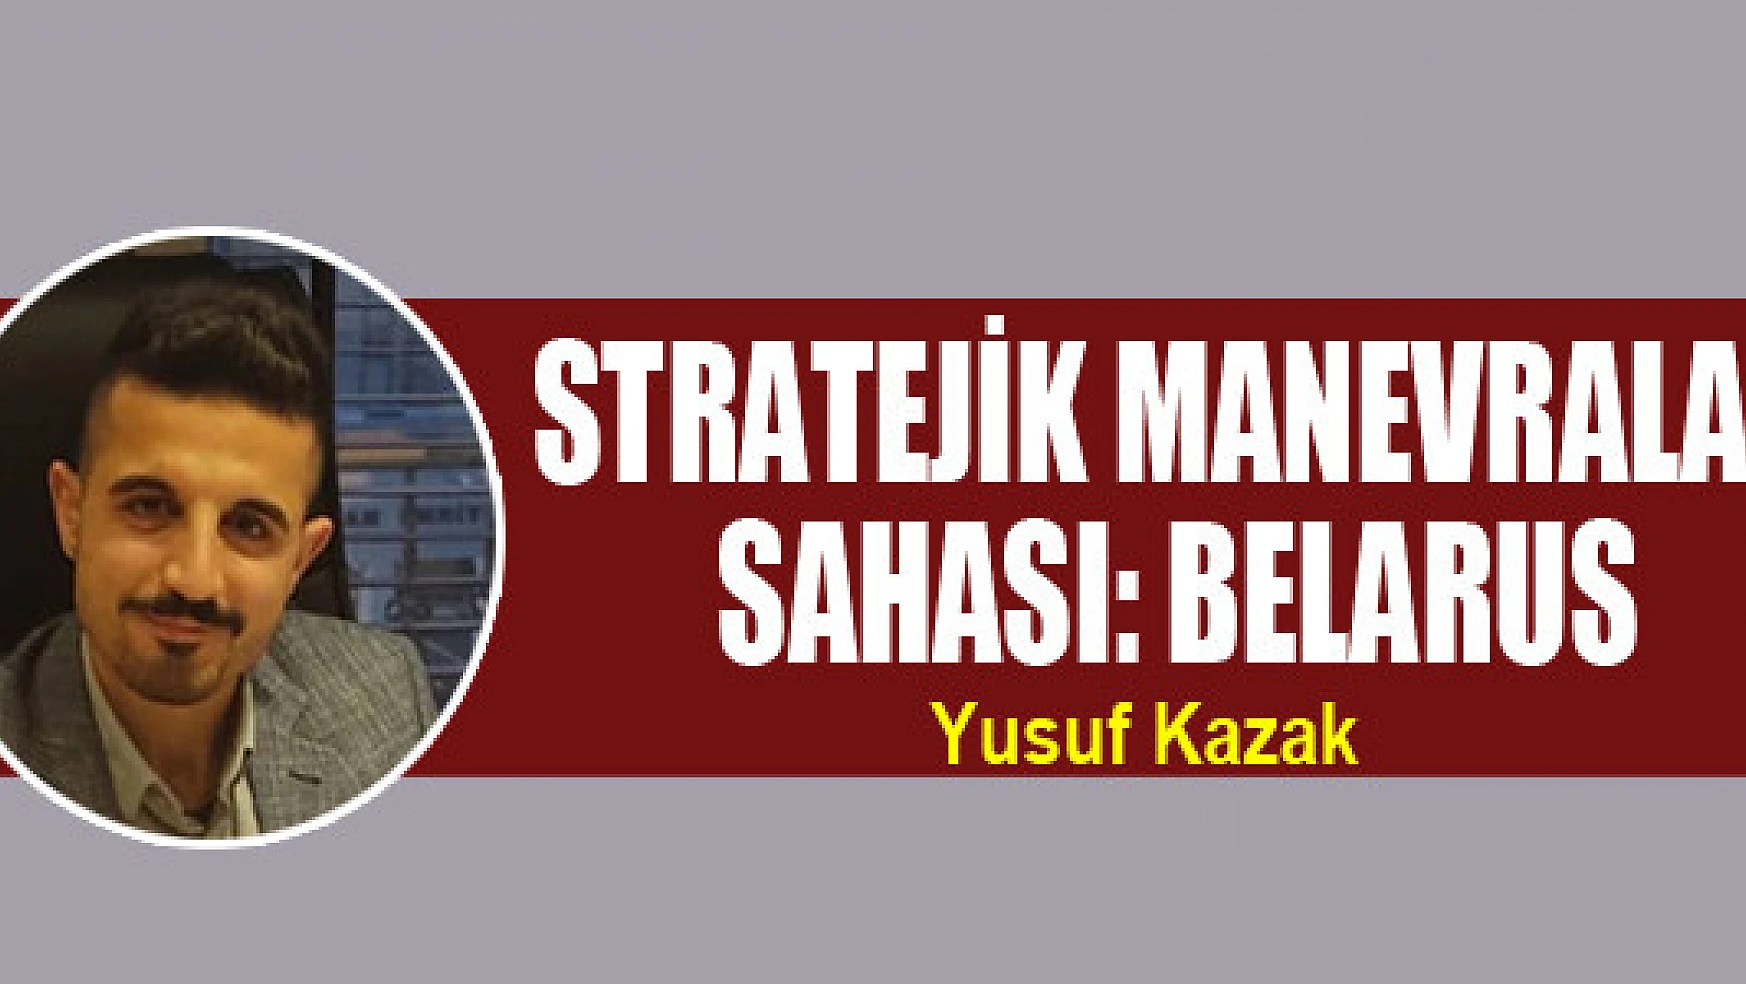 Stratejik manevralar sahası: Belarus